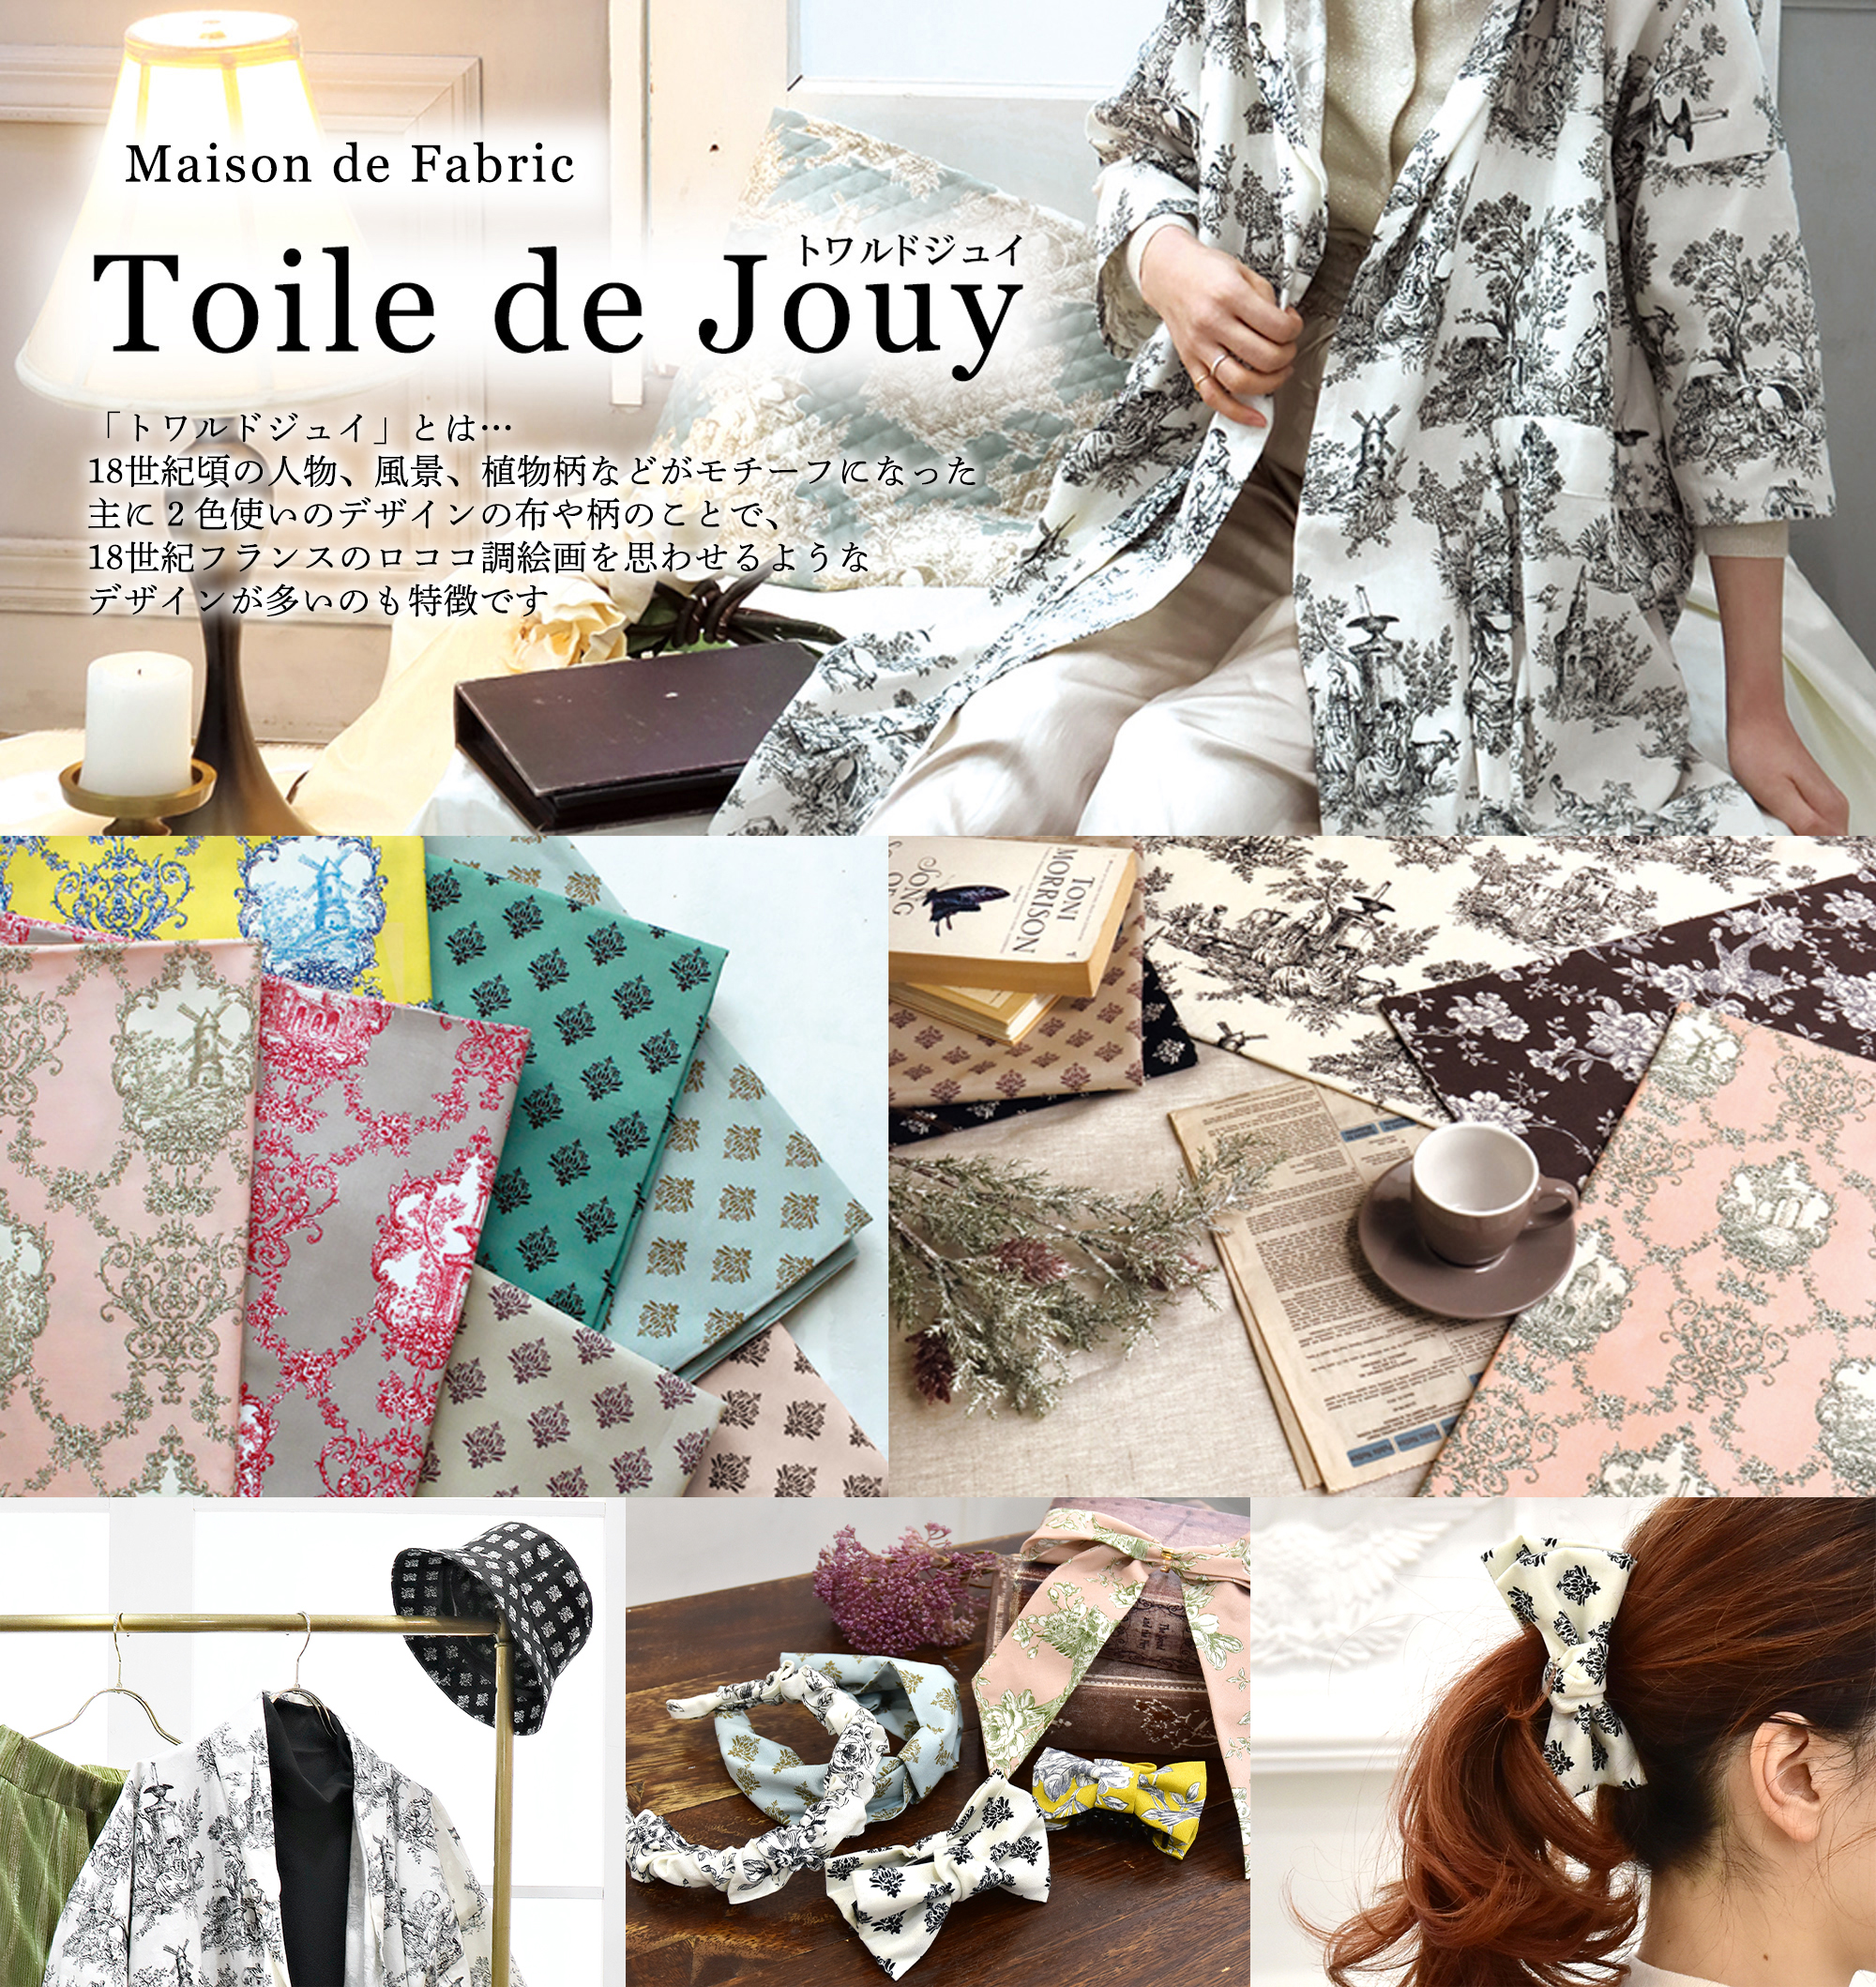 Toile de Jouy -トワルドジュイ-「手芸材料の卸売りサイトChuko Online」